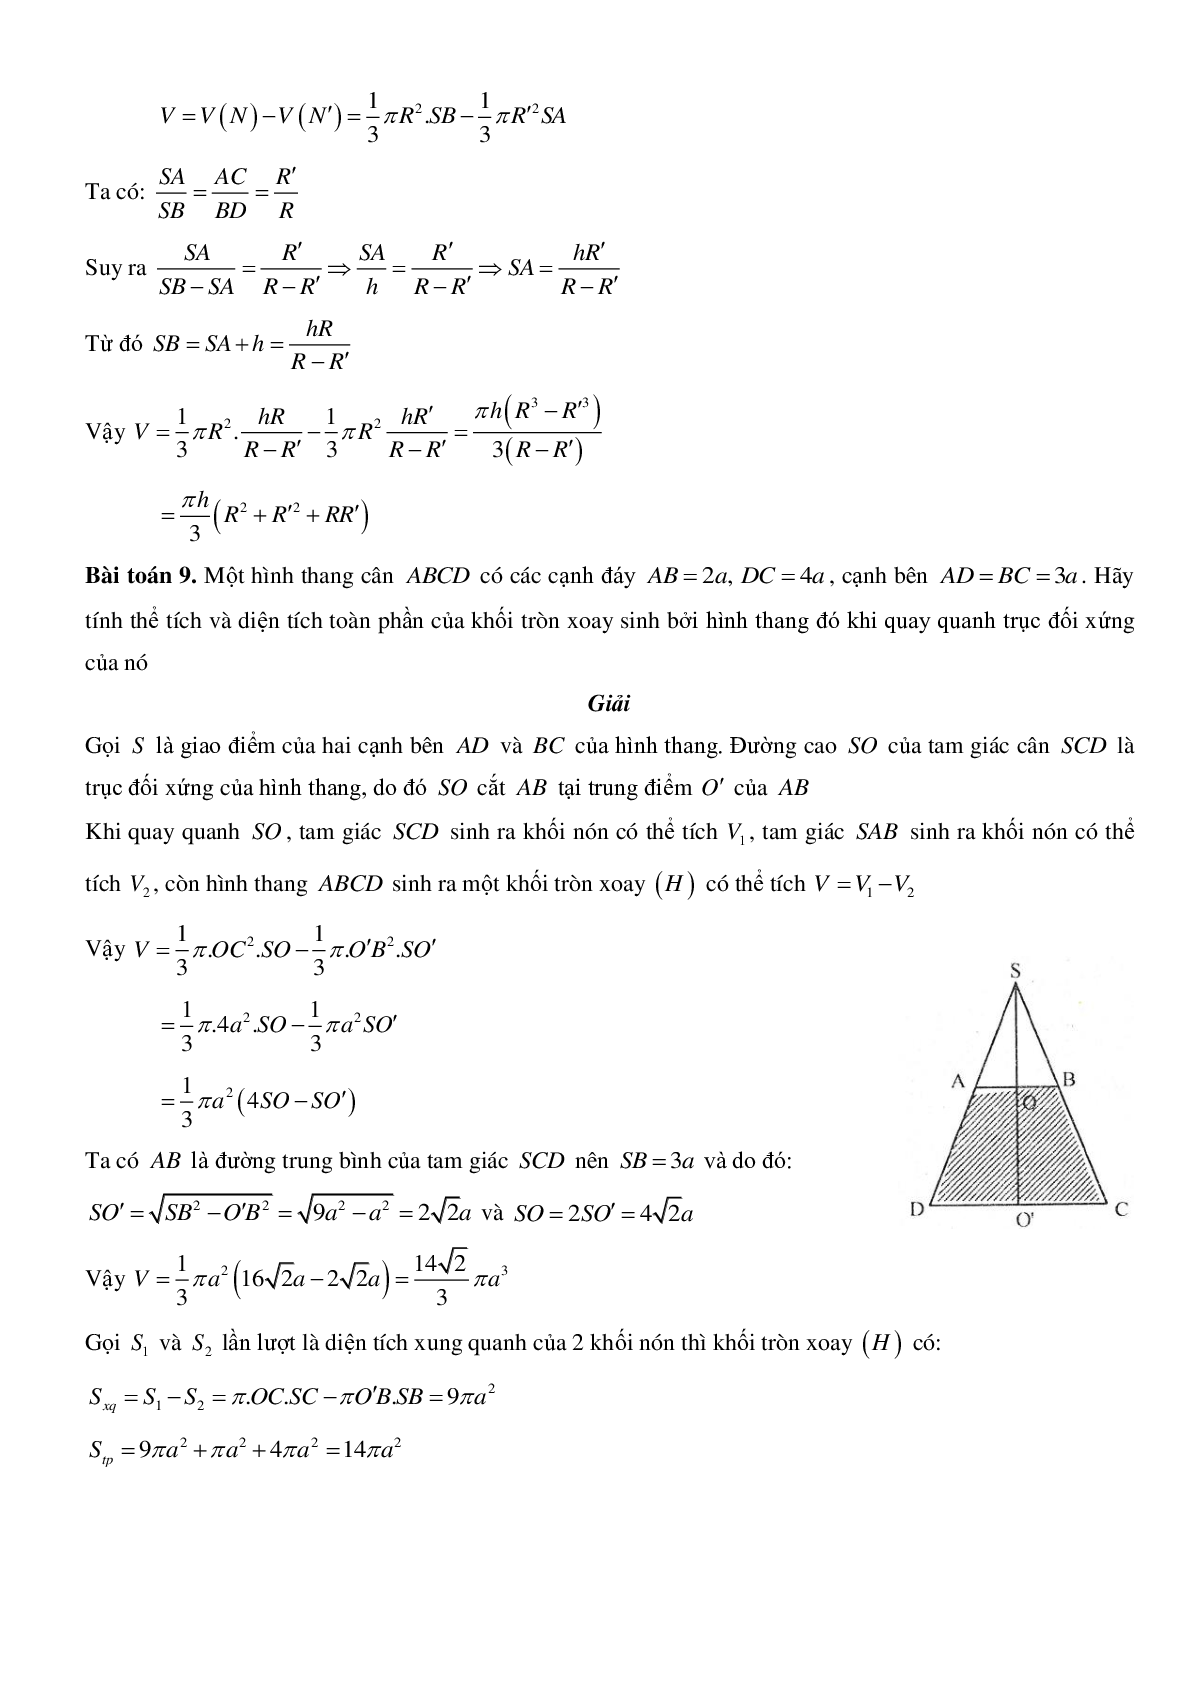 Mặt nón - Hình nón - Khối nón - Ôn thi THPT QG môn toán (trang 5)